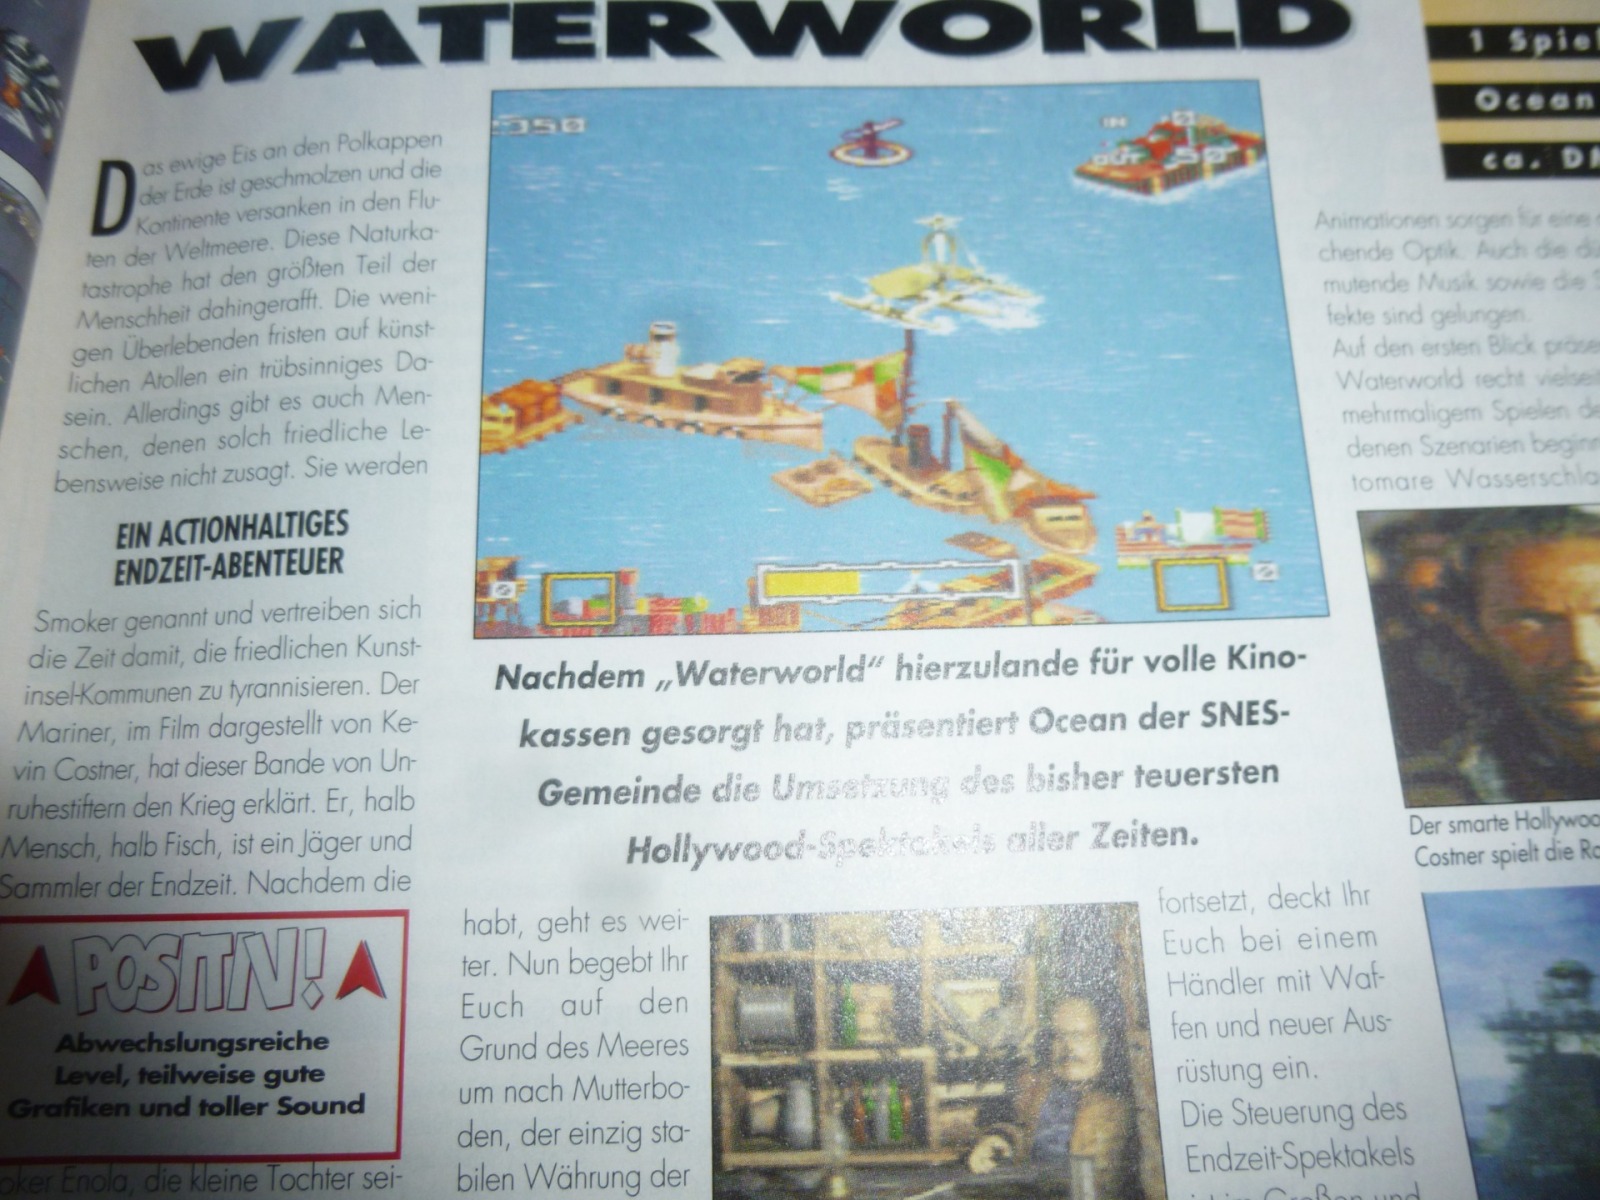 TOTAL Das unabhängige Magazin - 100 Nintendo - Ausgabe 3/96 1996 13